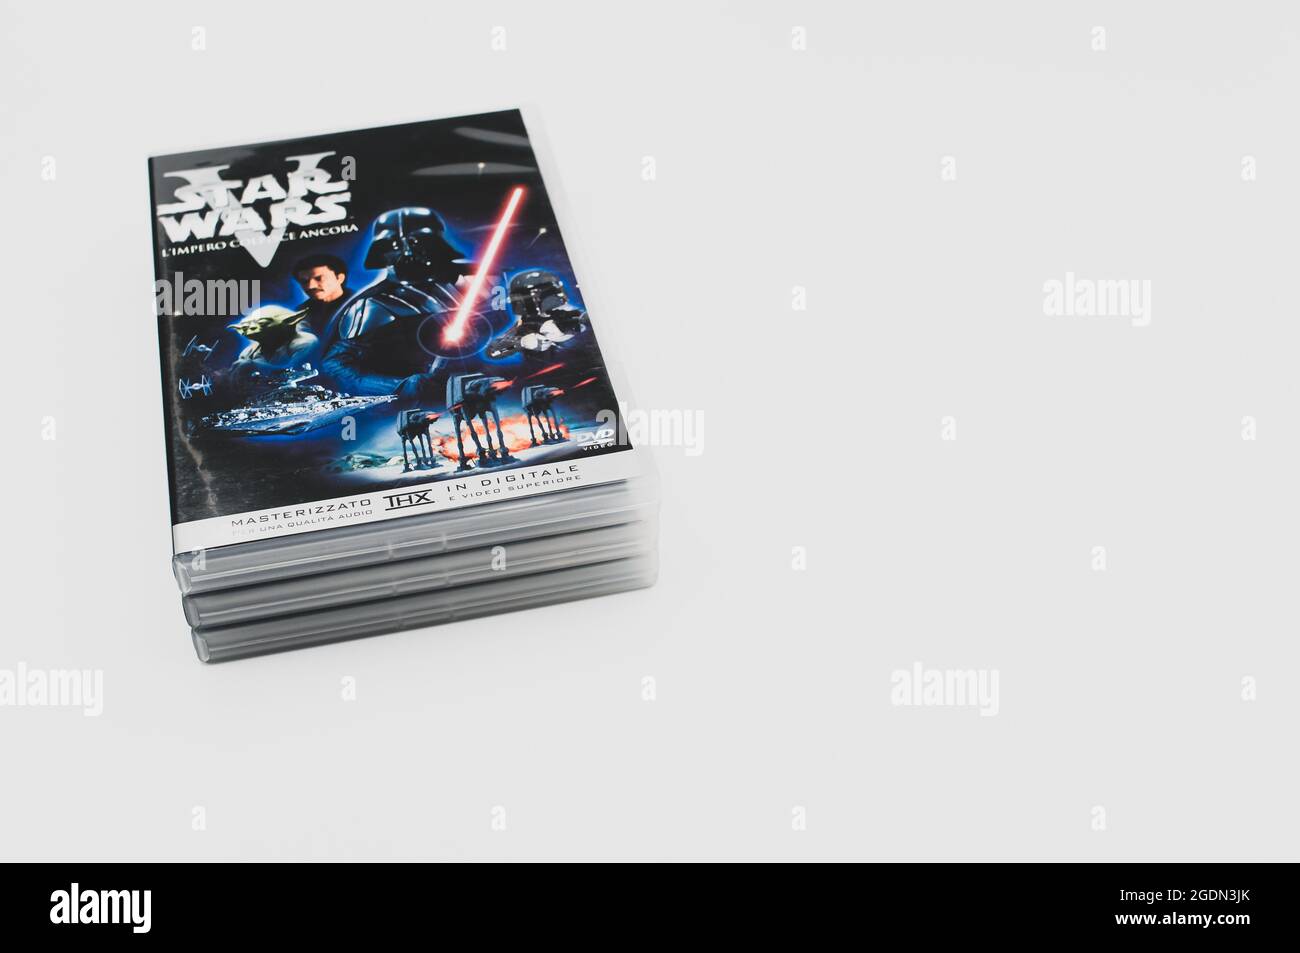 Star Wars original trilogie film DVD avec espace pour le texte Banque D'Images